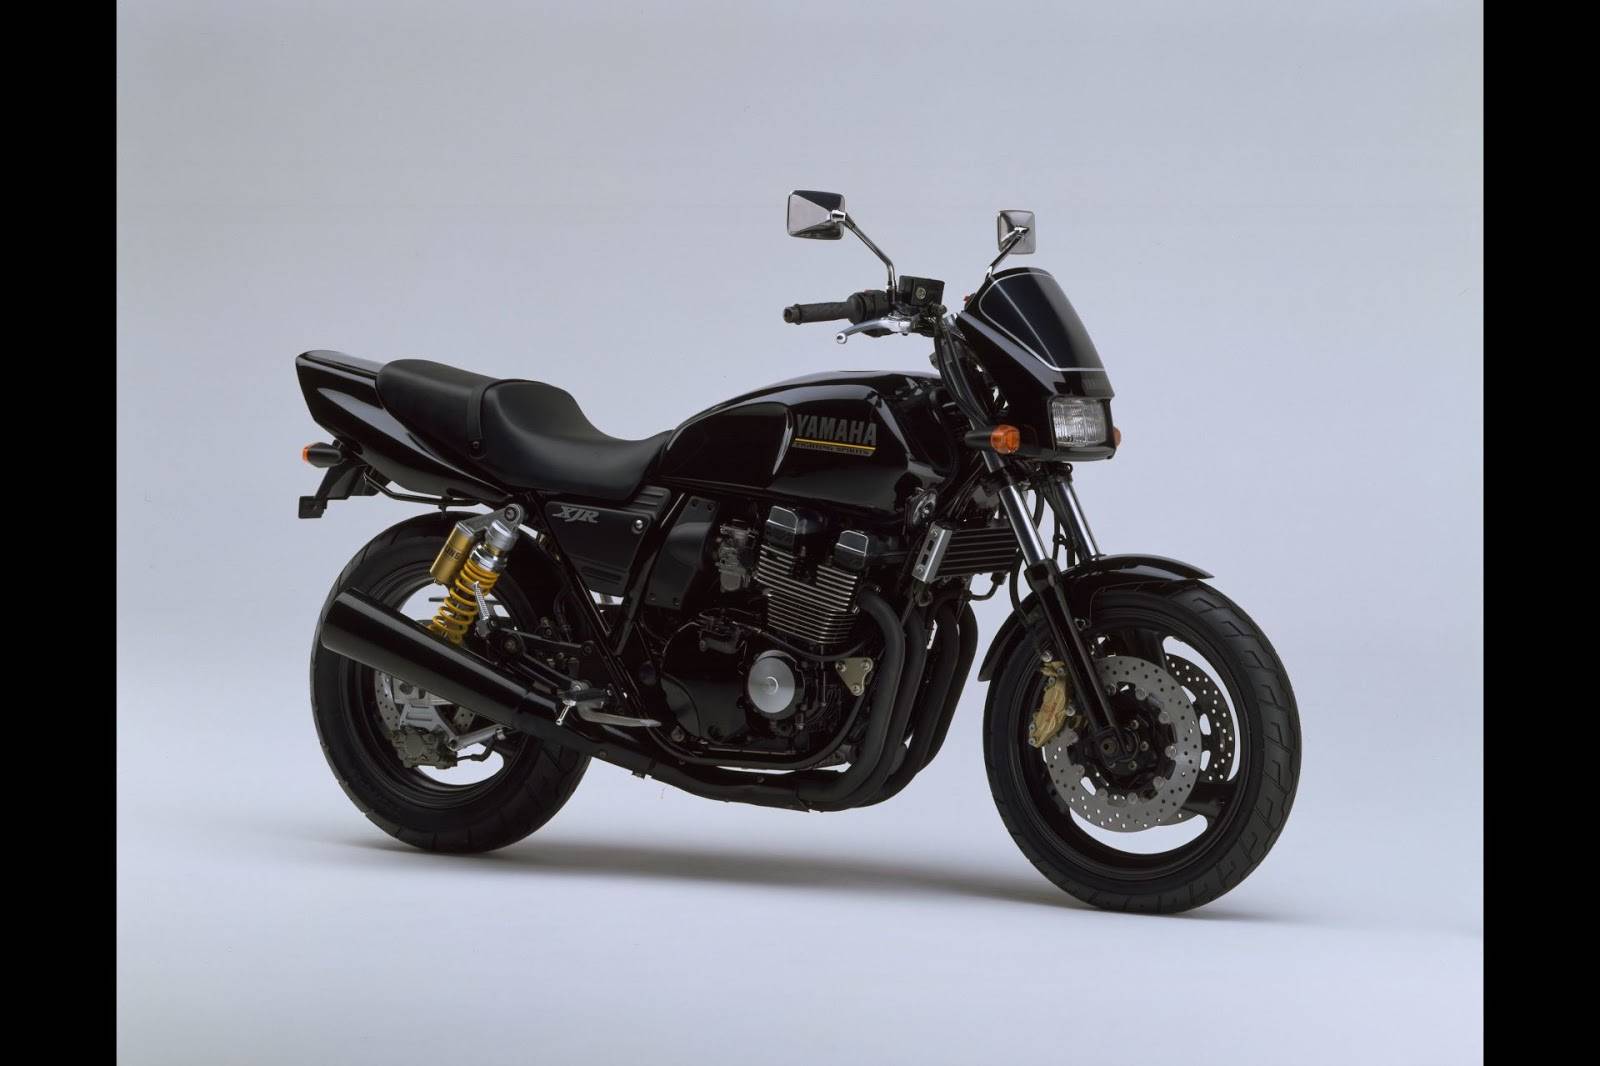 Ямаха xjr 400 - архаичный дорожный мотоцикл | ⚡chtocar